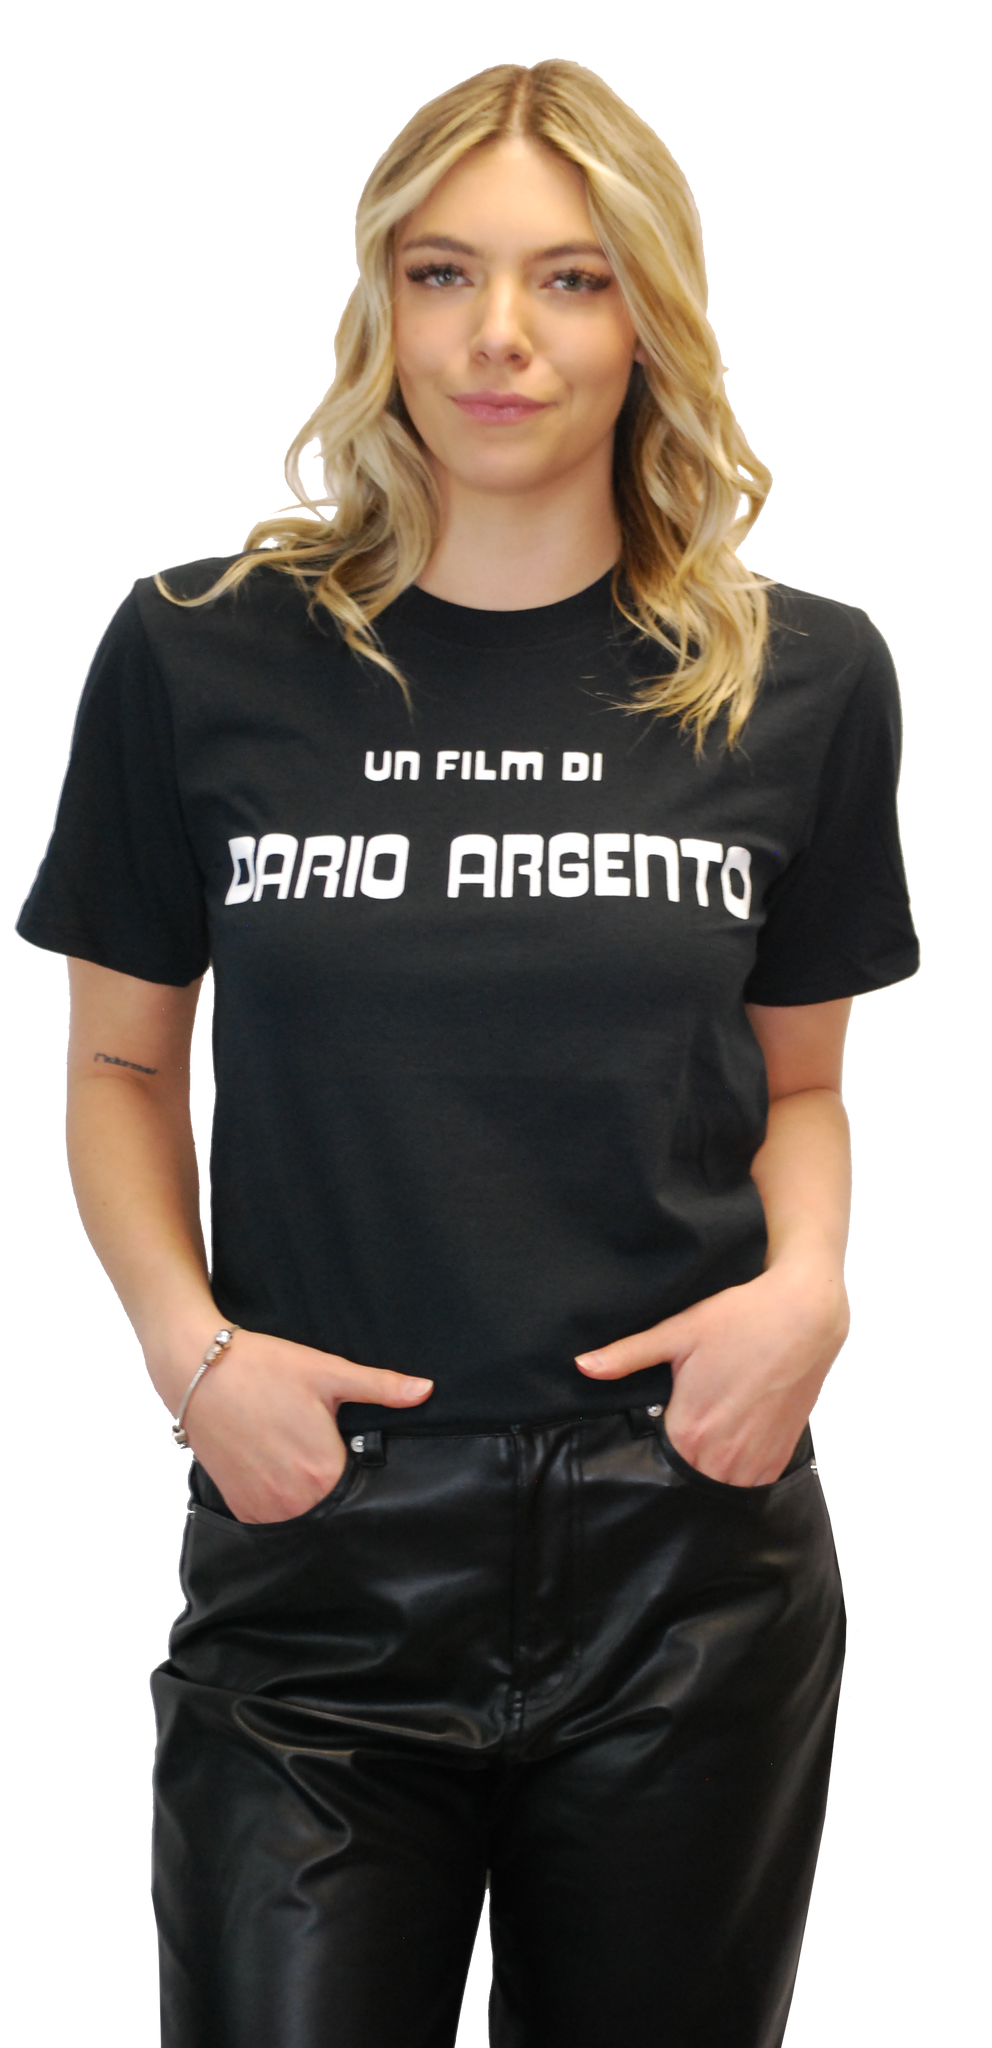 DARIO ARGENTO: "UN FILM DI DARIO ARGENTO" T-SHIRT